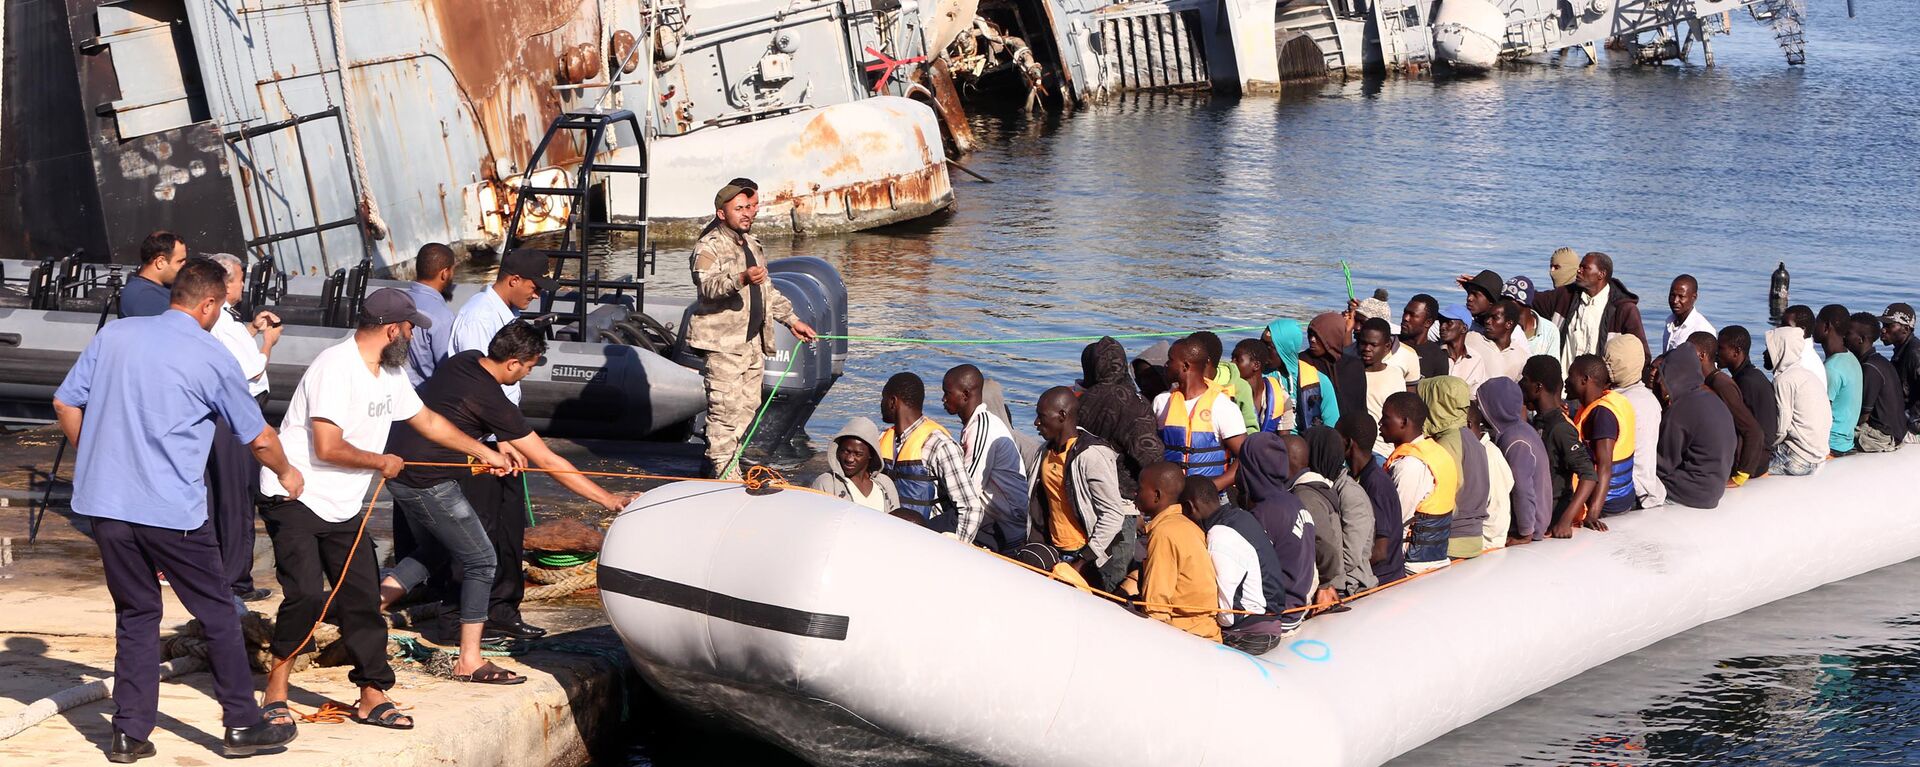  خفر السواحل الليبي يقوم بسحب قارب يحمل مهاجرين أفارقة، تم إنقاذهم أثناء محاولتهم الوصول إلى أوروبا بطريقة غير شرعية، في قاعدة بحرية بالقرب من العاصمة طرابلس في 29 سبتمبر/ أيلول 2015. - سبوتنيك عربي, 1920, 11.10.2021